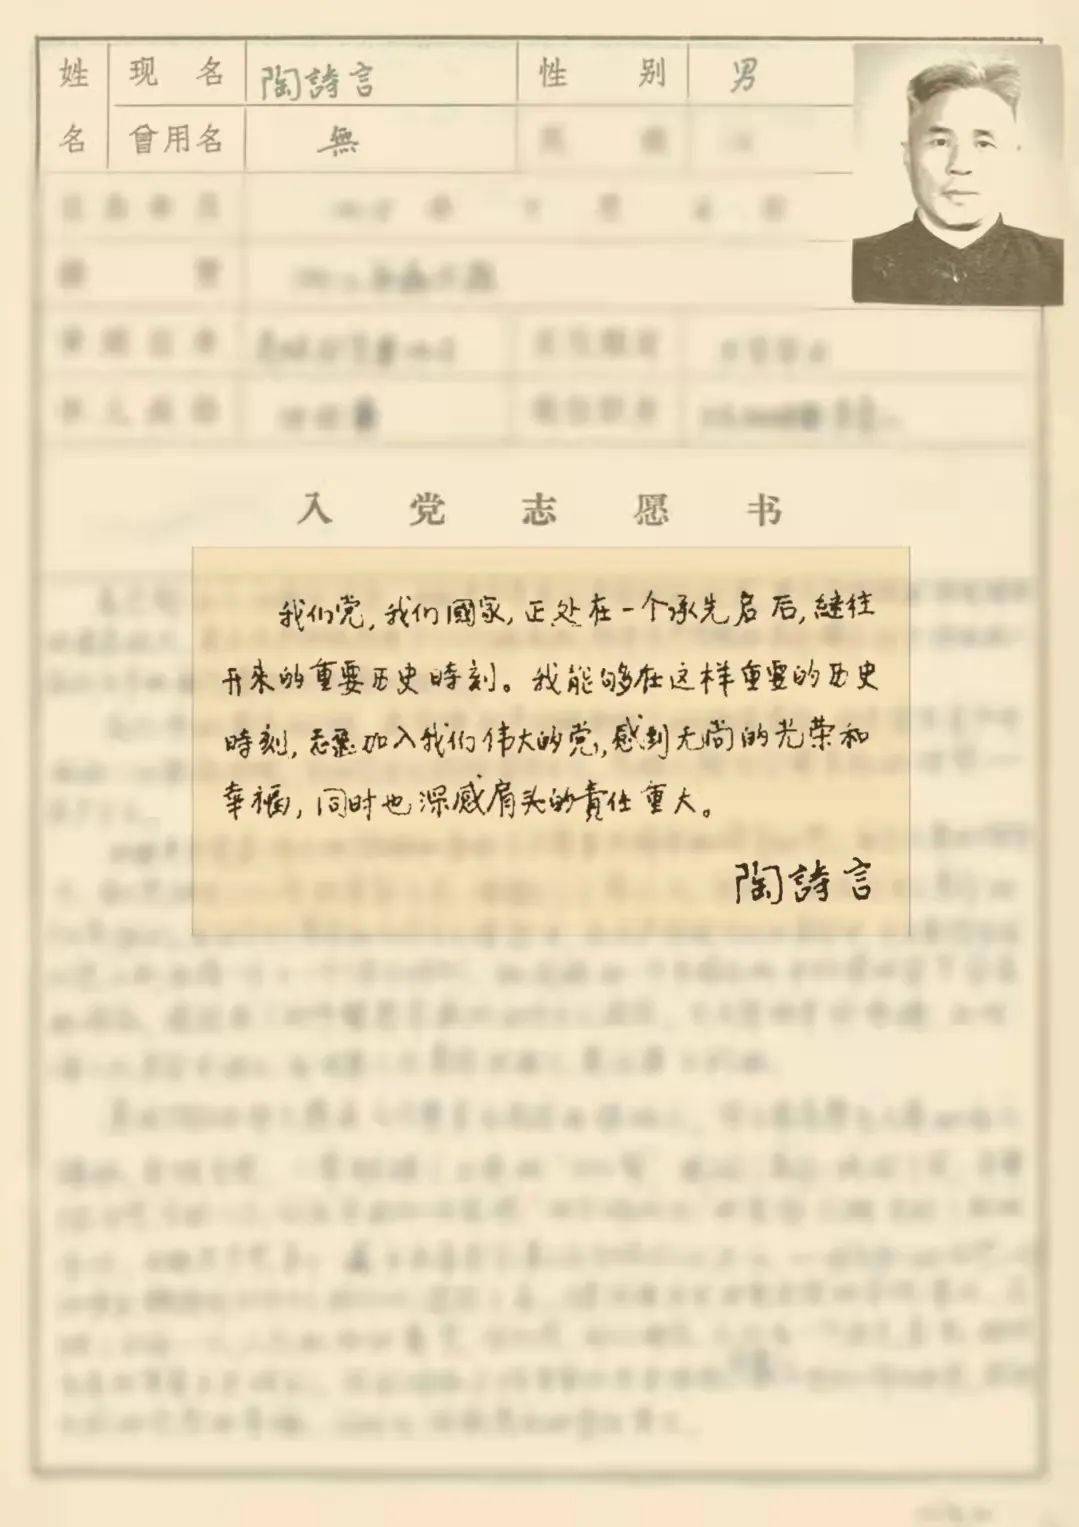 科技日报,制作:李忠明,赵卫华,何沛苁,齐伟,马延梅——摘自陶诗言1978